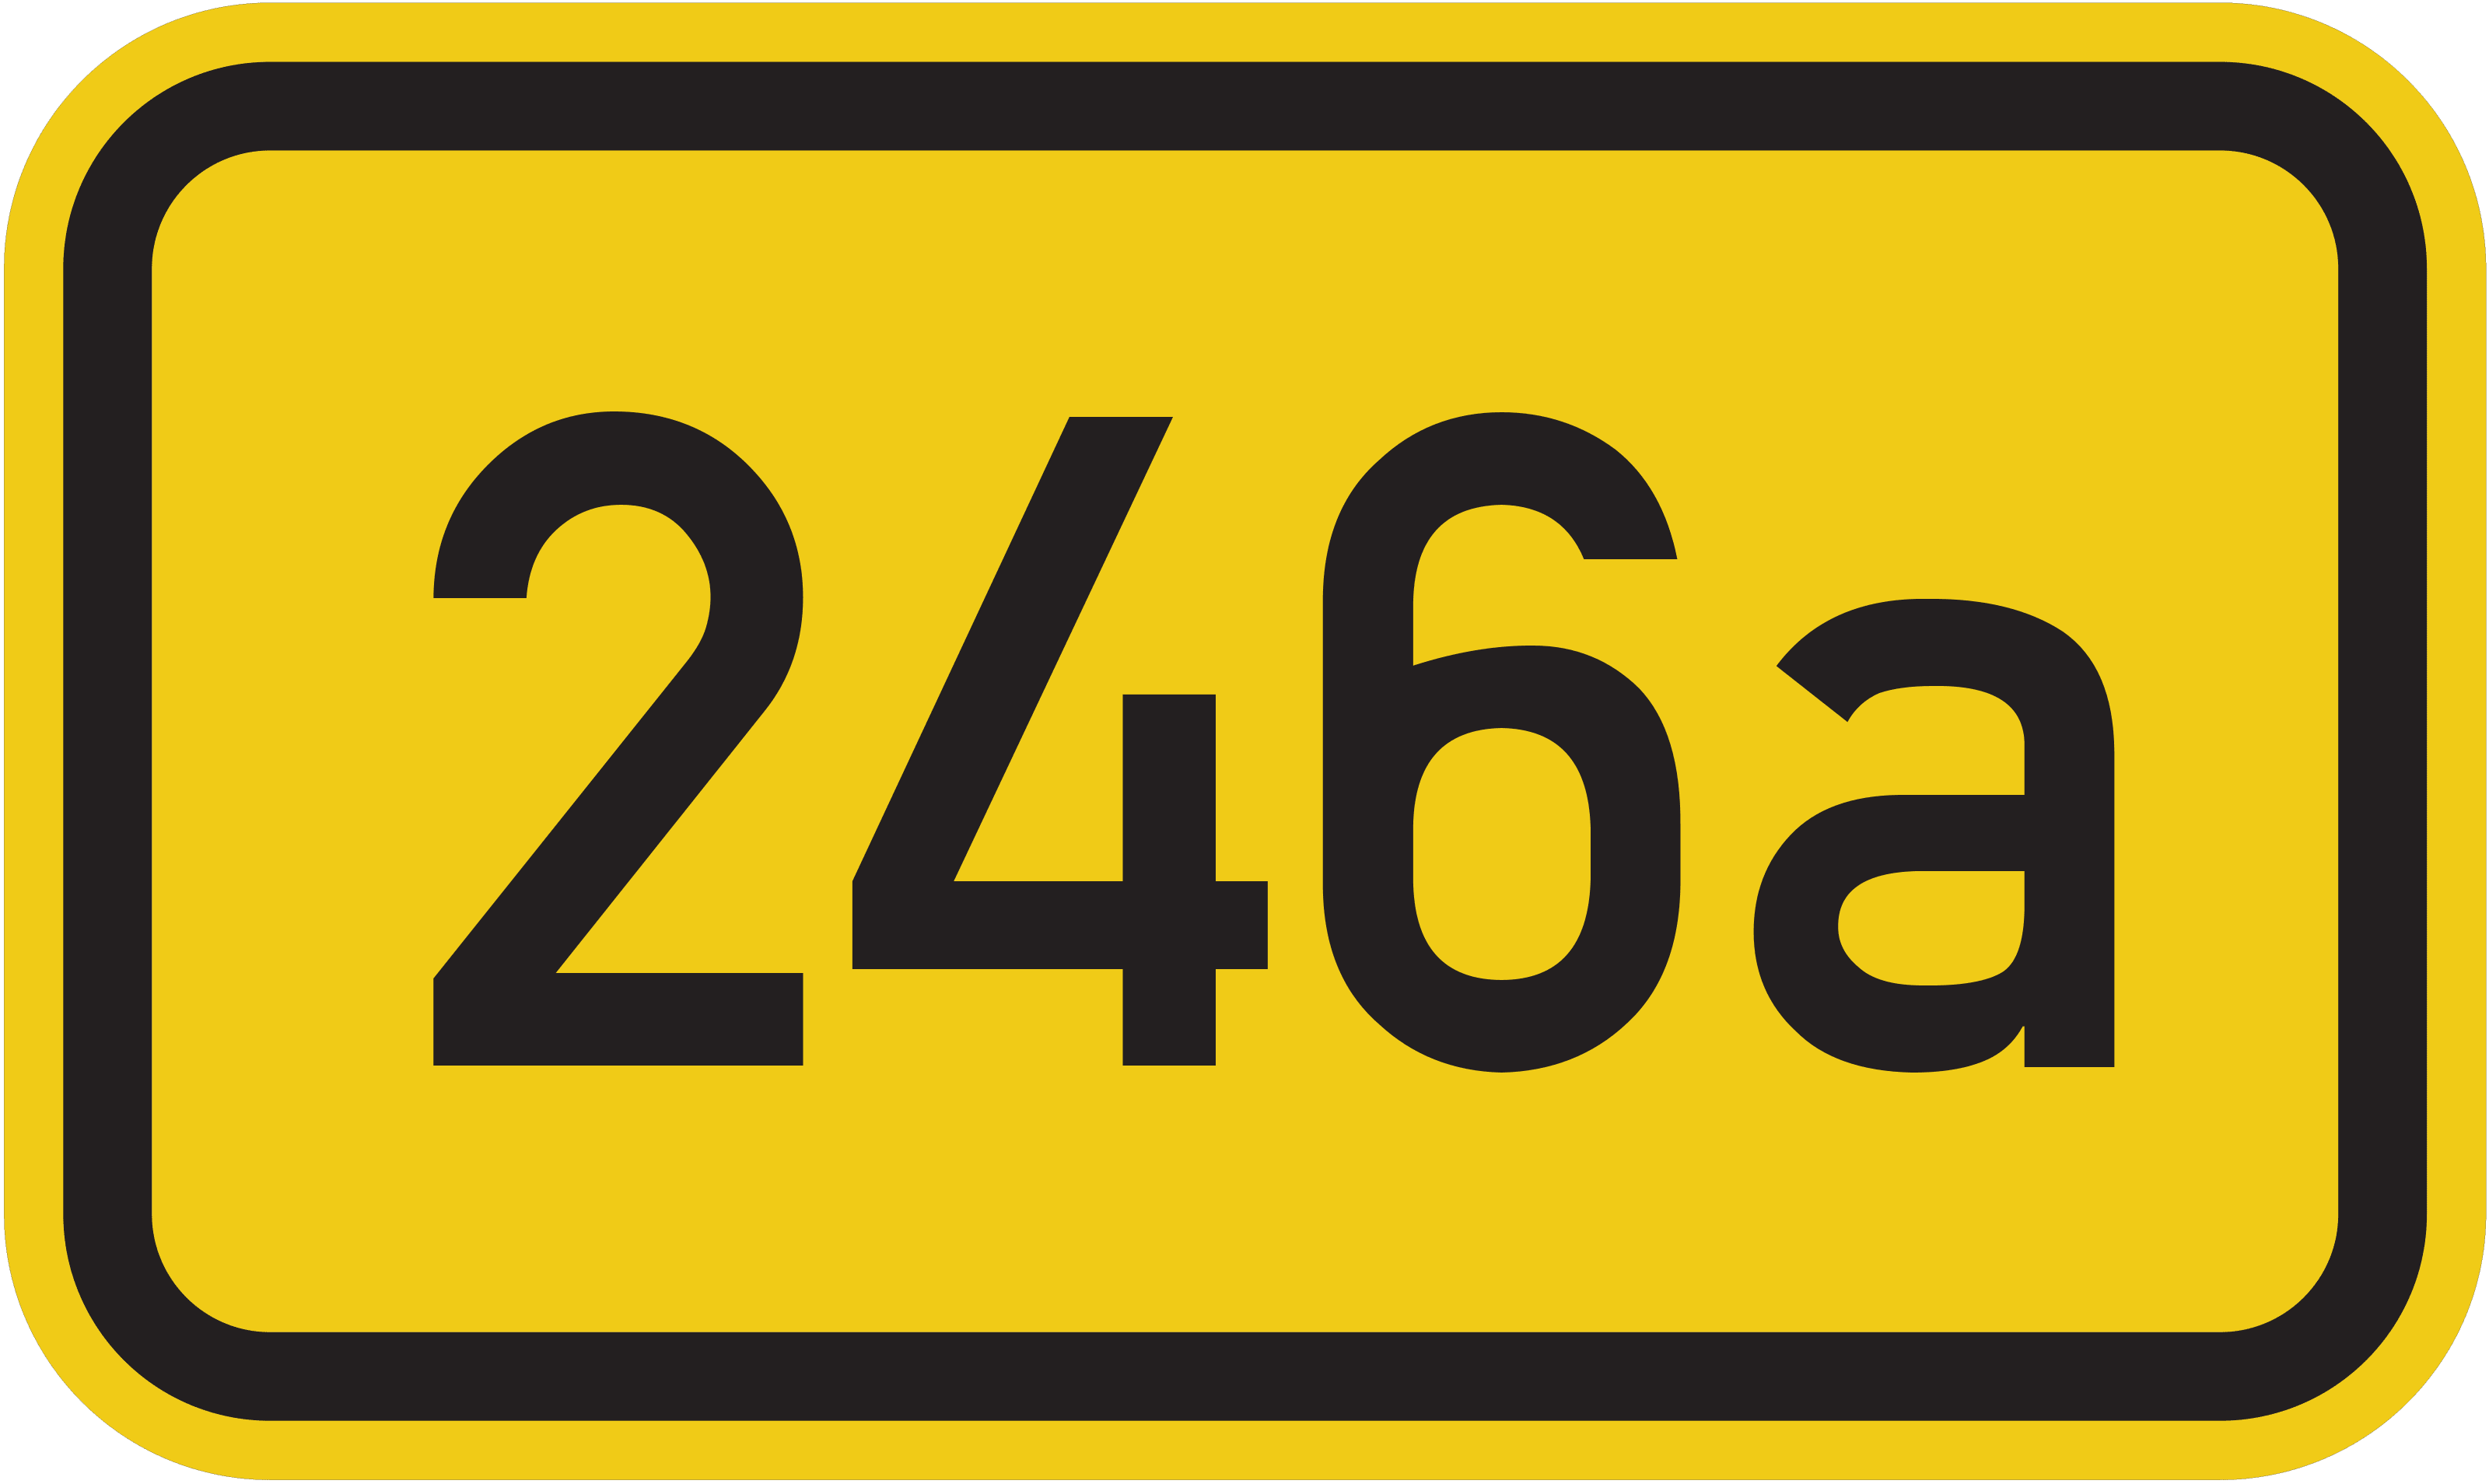 Bundesstraße B 246a